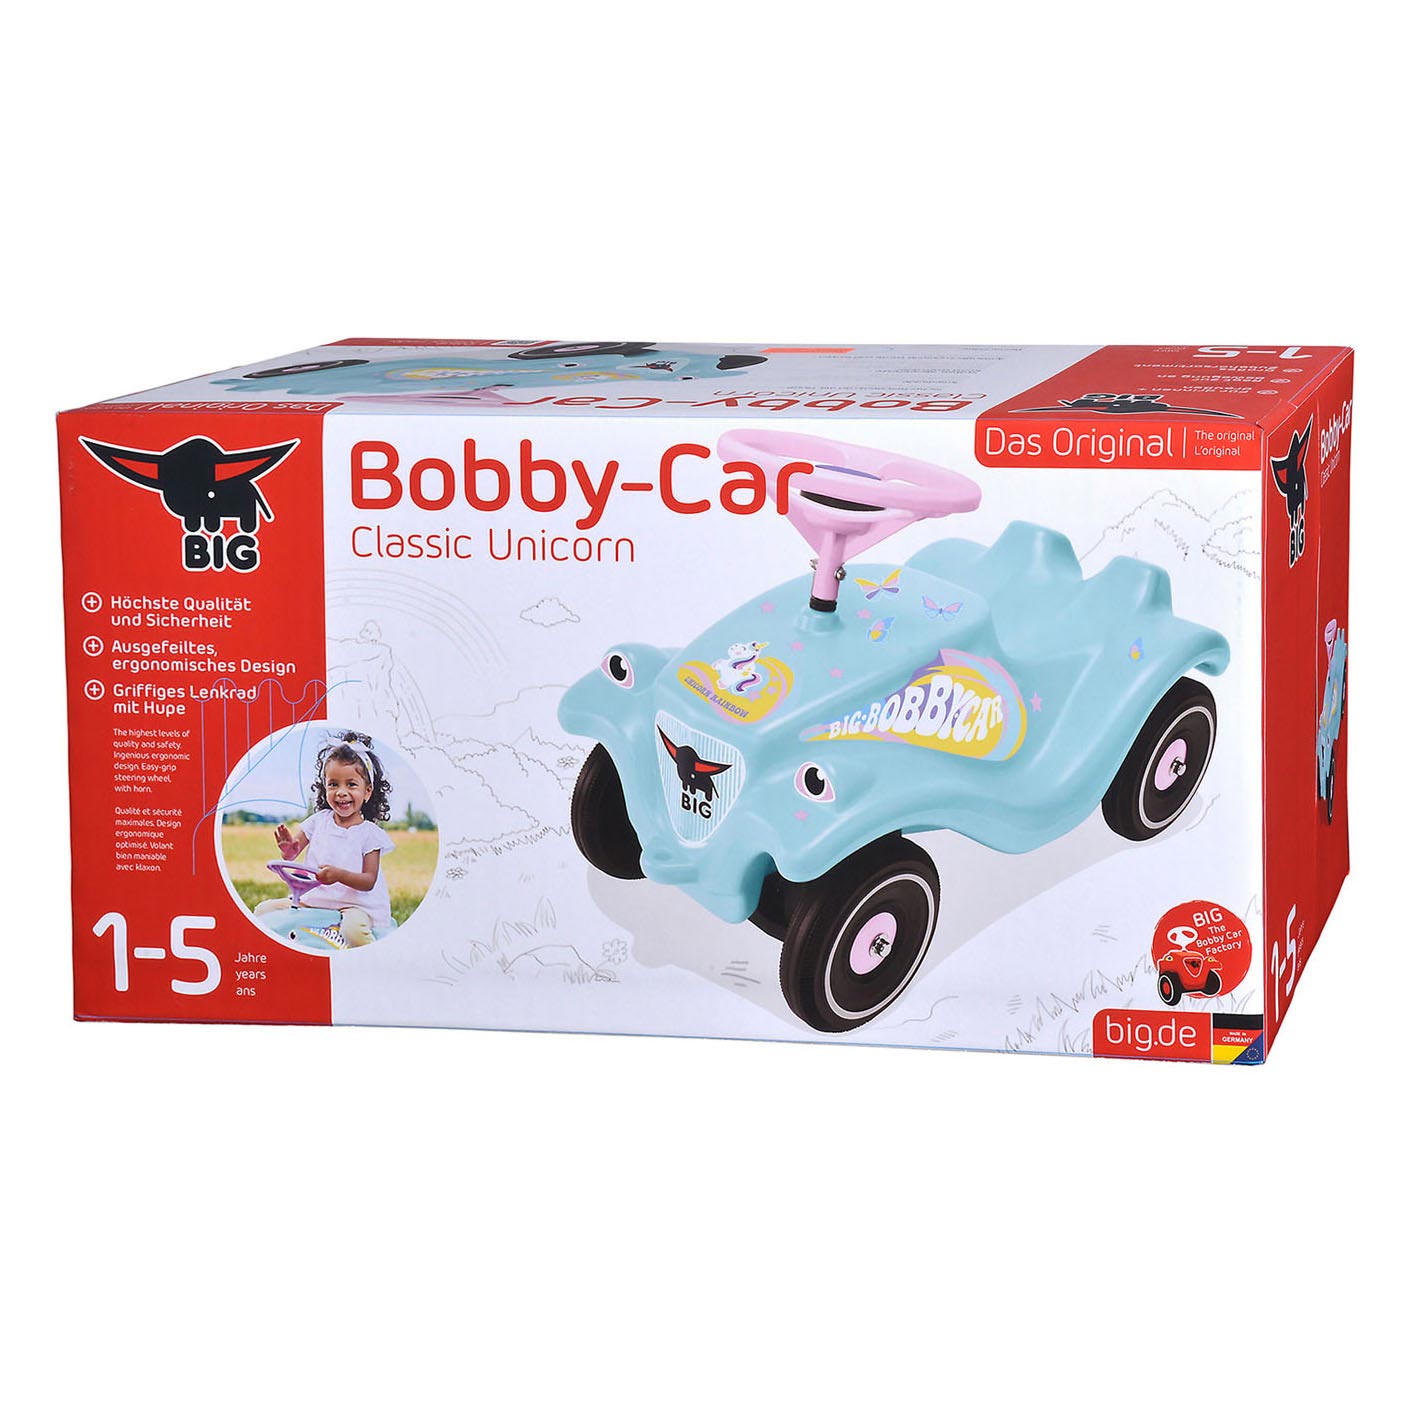 Kaufen Sie BIG Bobby Car Klassisches